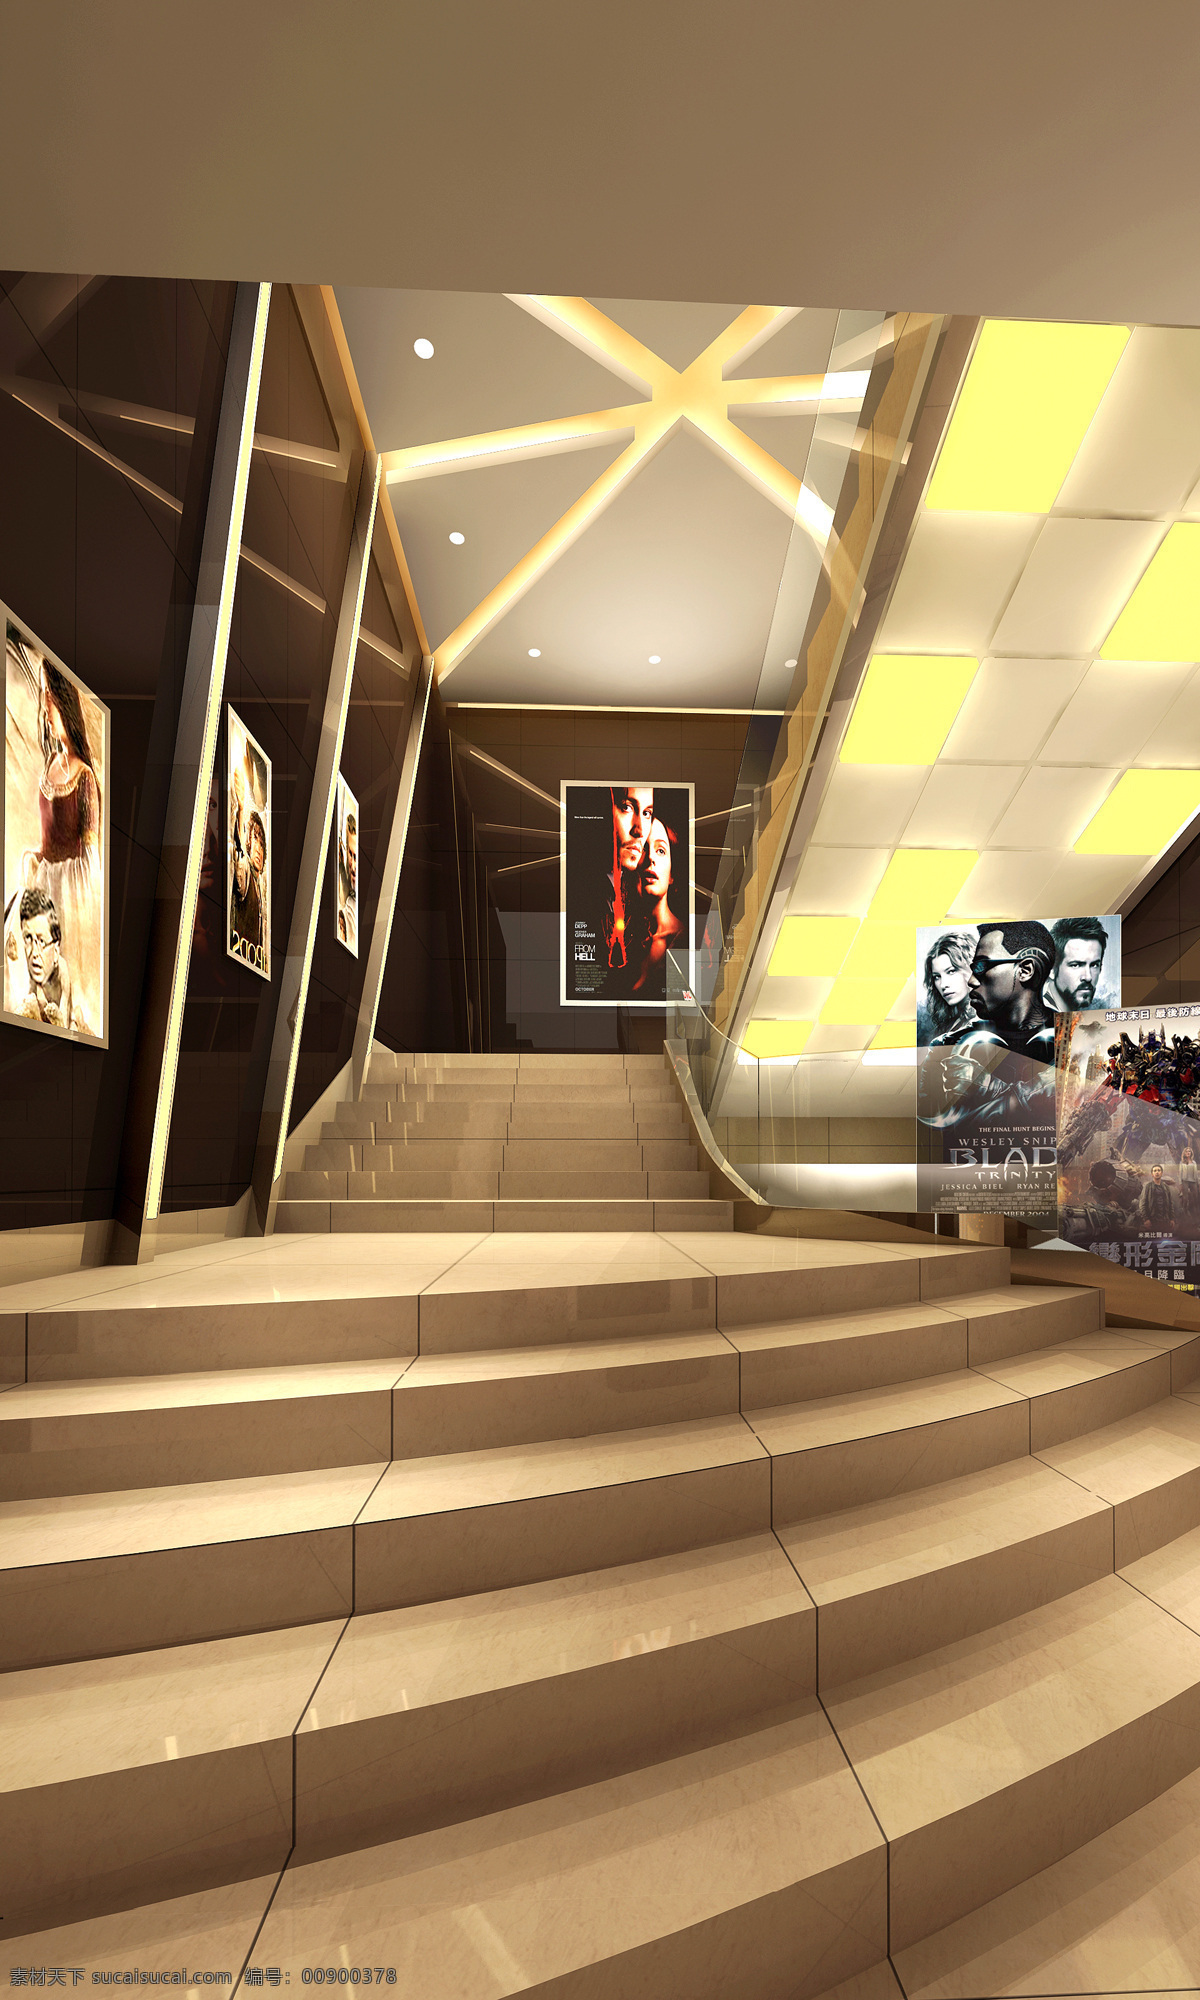 电影院 3d设计 室内设计 效果图 设计素材 模板下载 楼梯下 公装 家居装饰素材